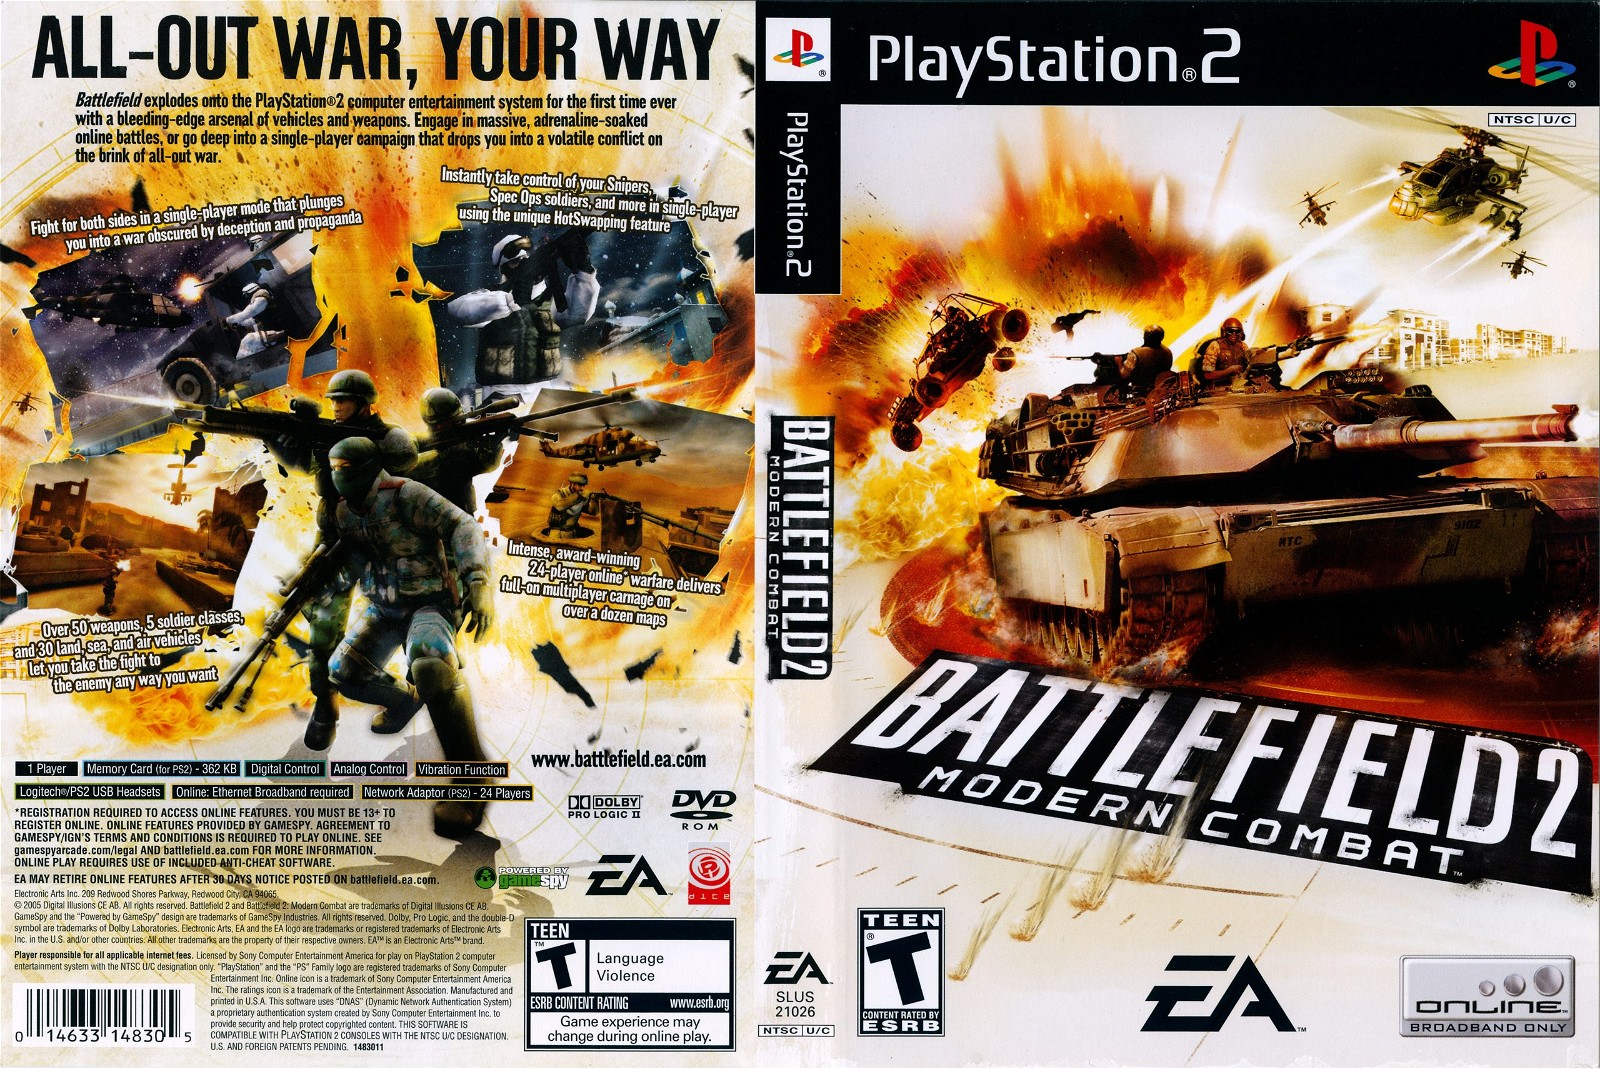 Battlefield 2 Modern Combat PS2 box art